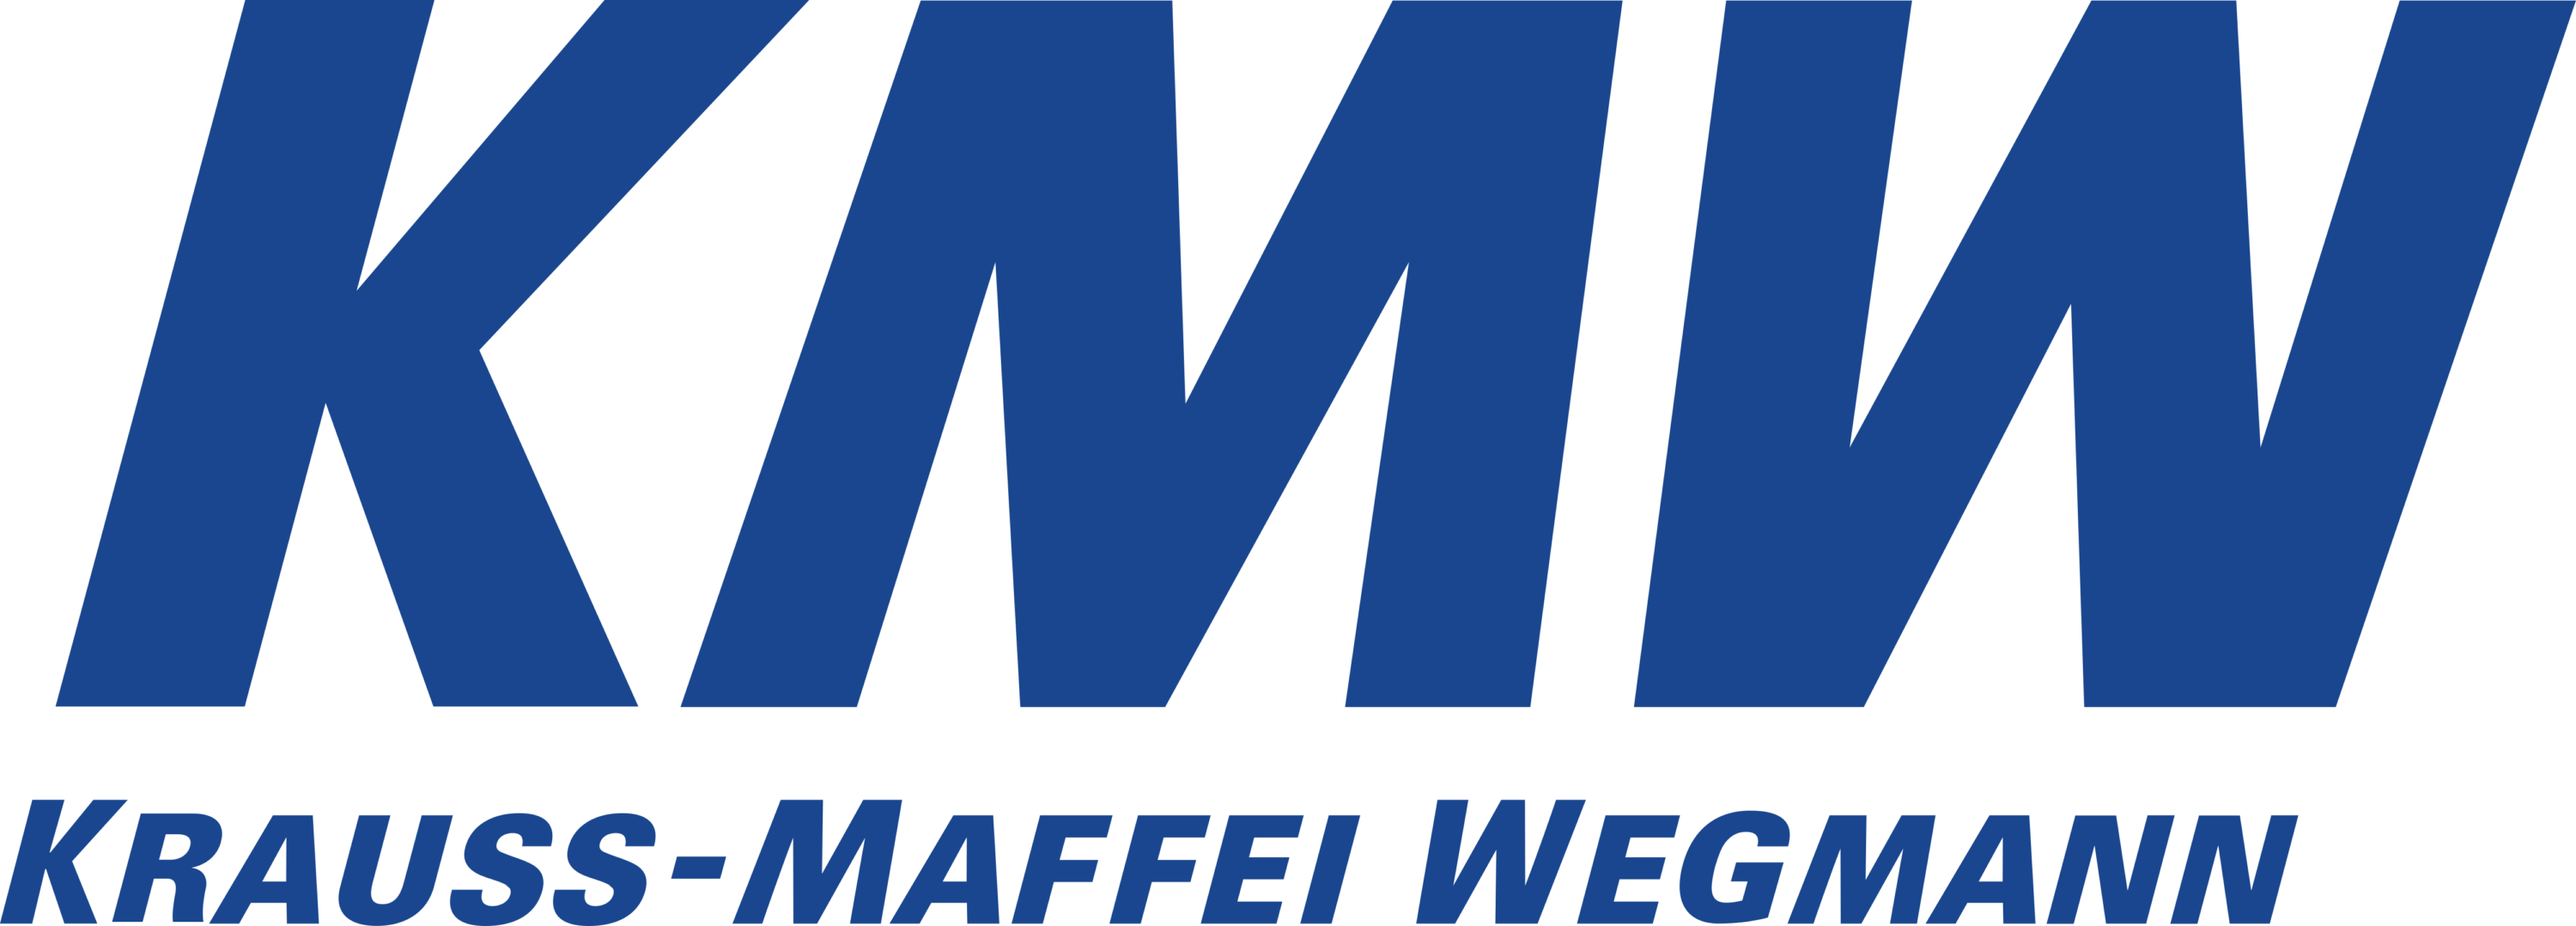 Krauss Maffei Wegmann Logo blue